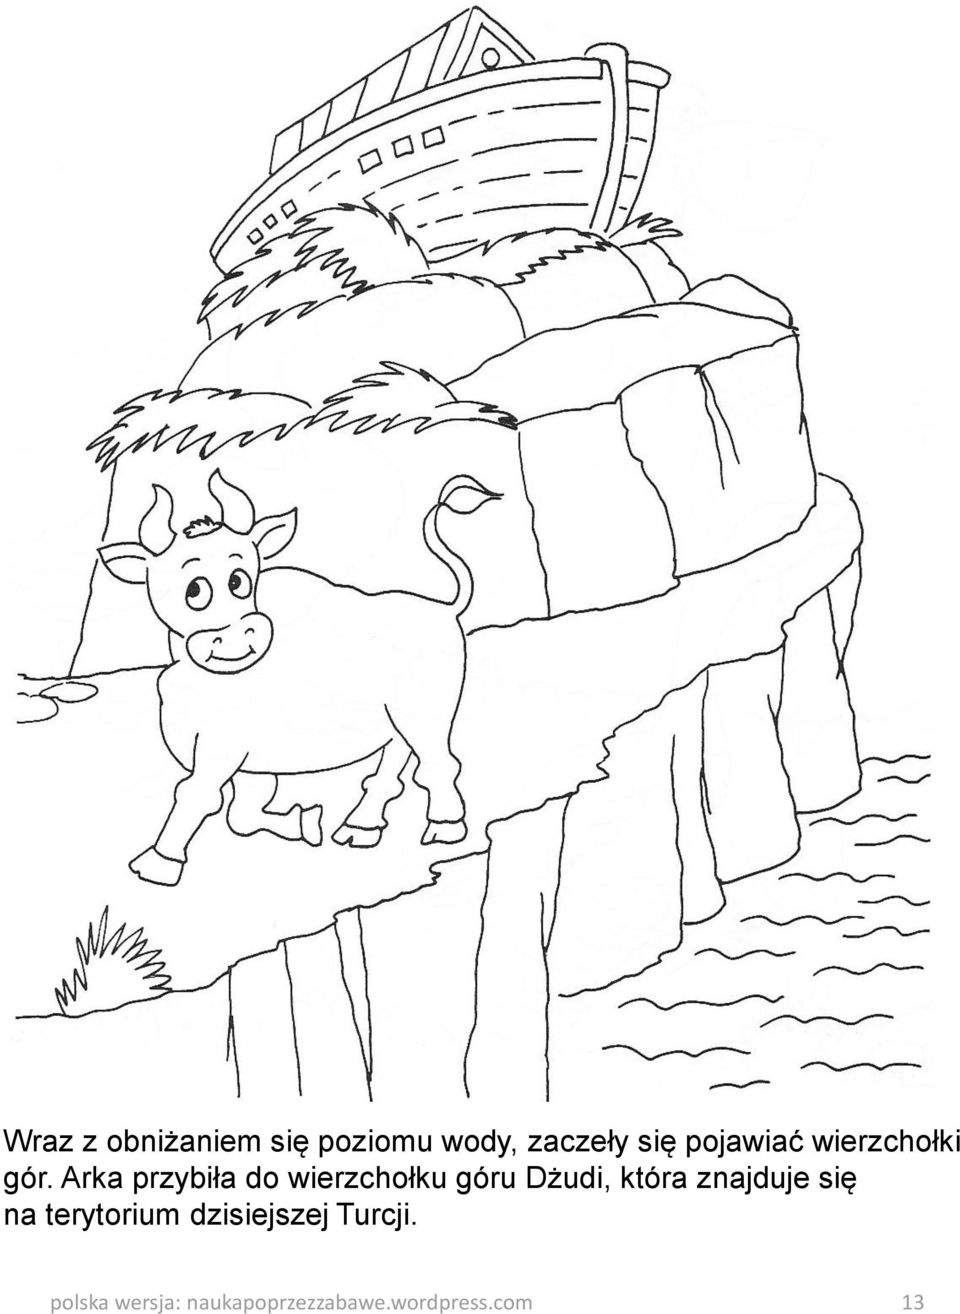 Arka przybiła do wierzchołku góru Dżudi, która